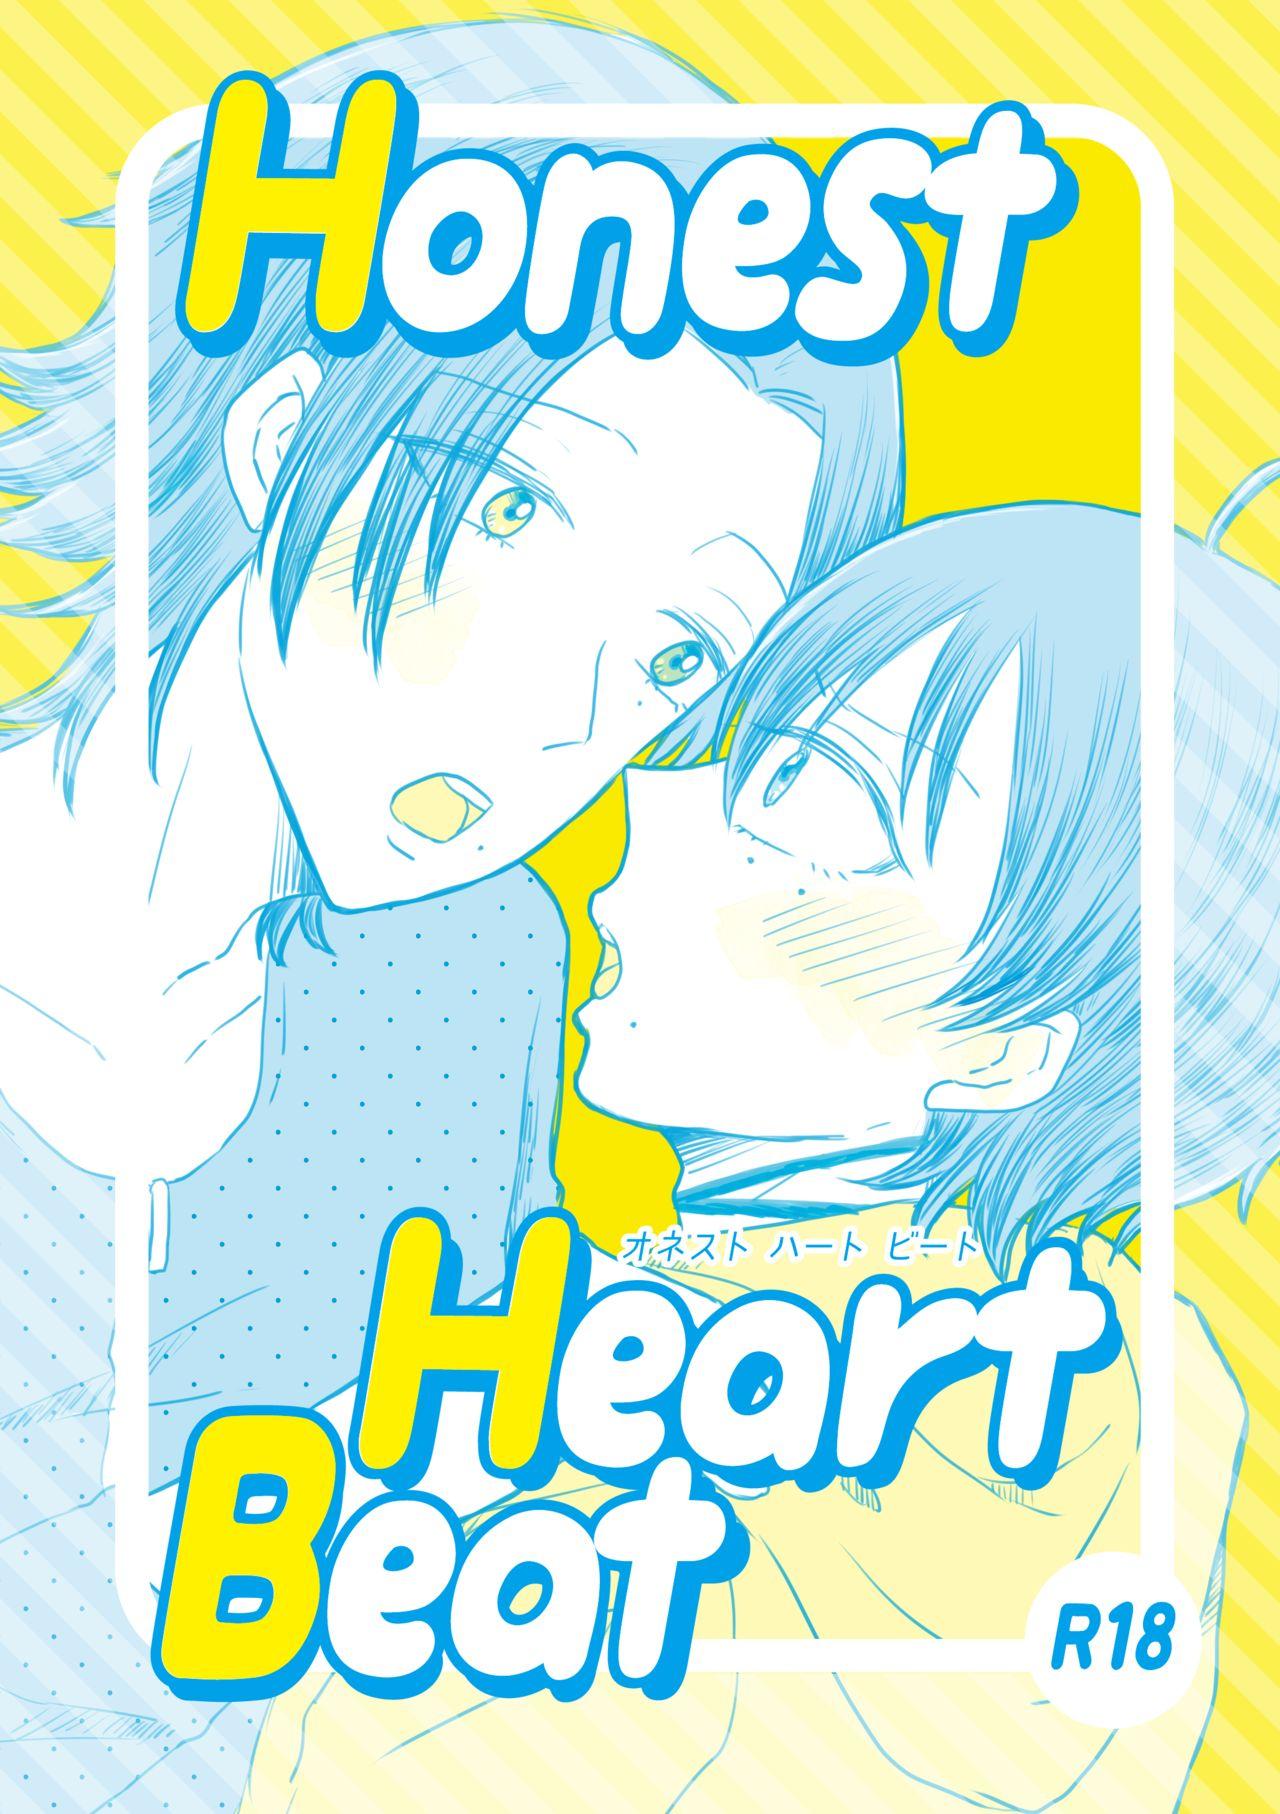 Honest Heart Beat 0